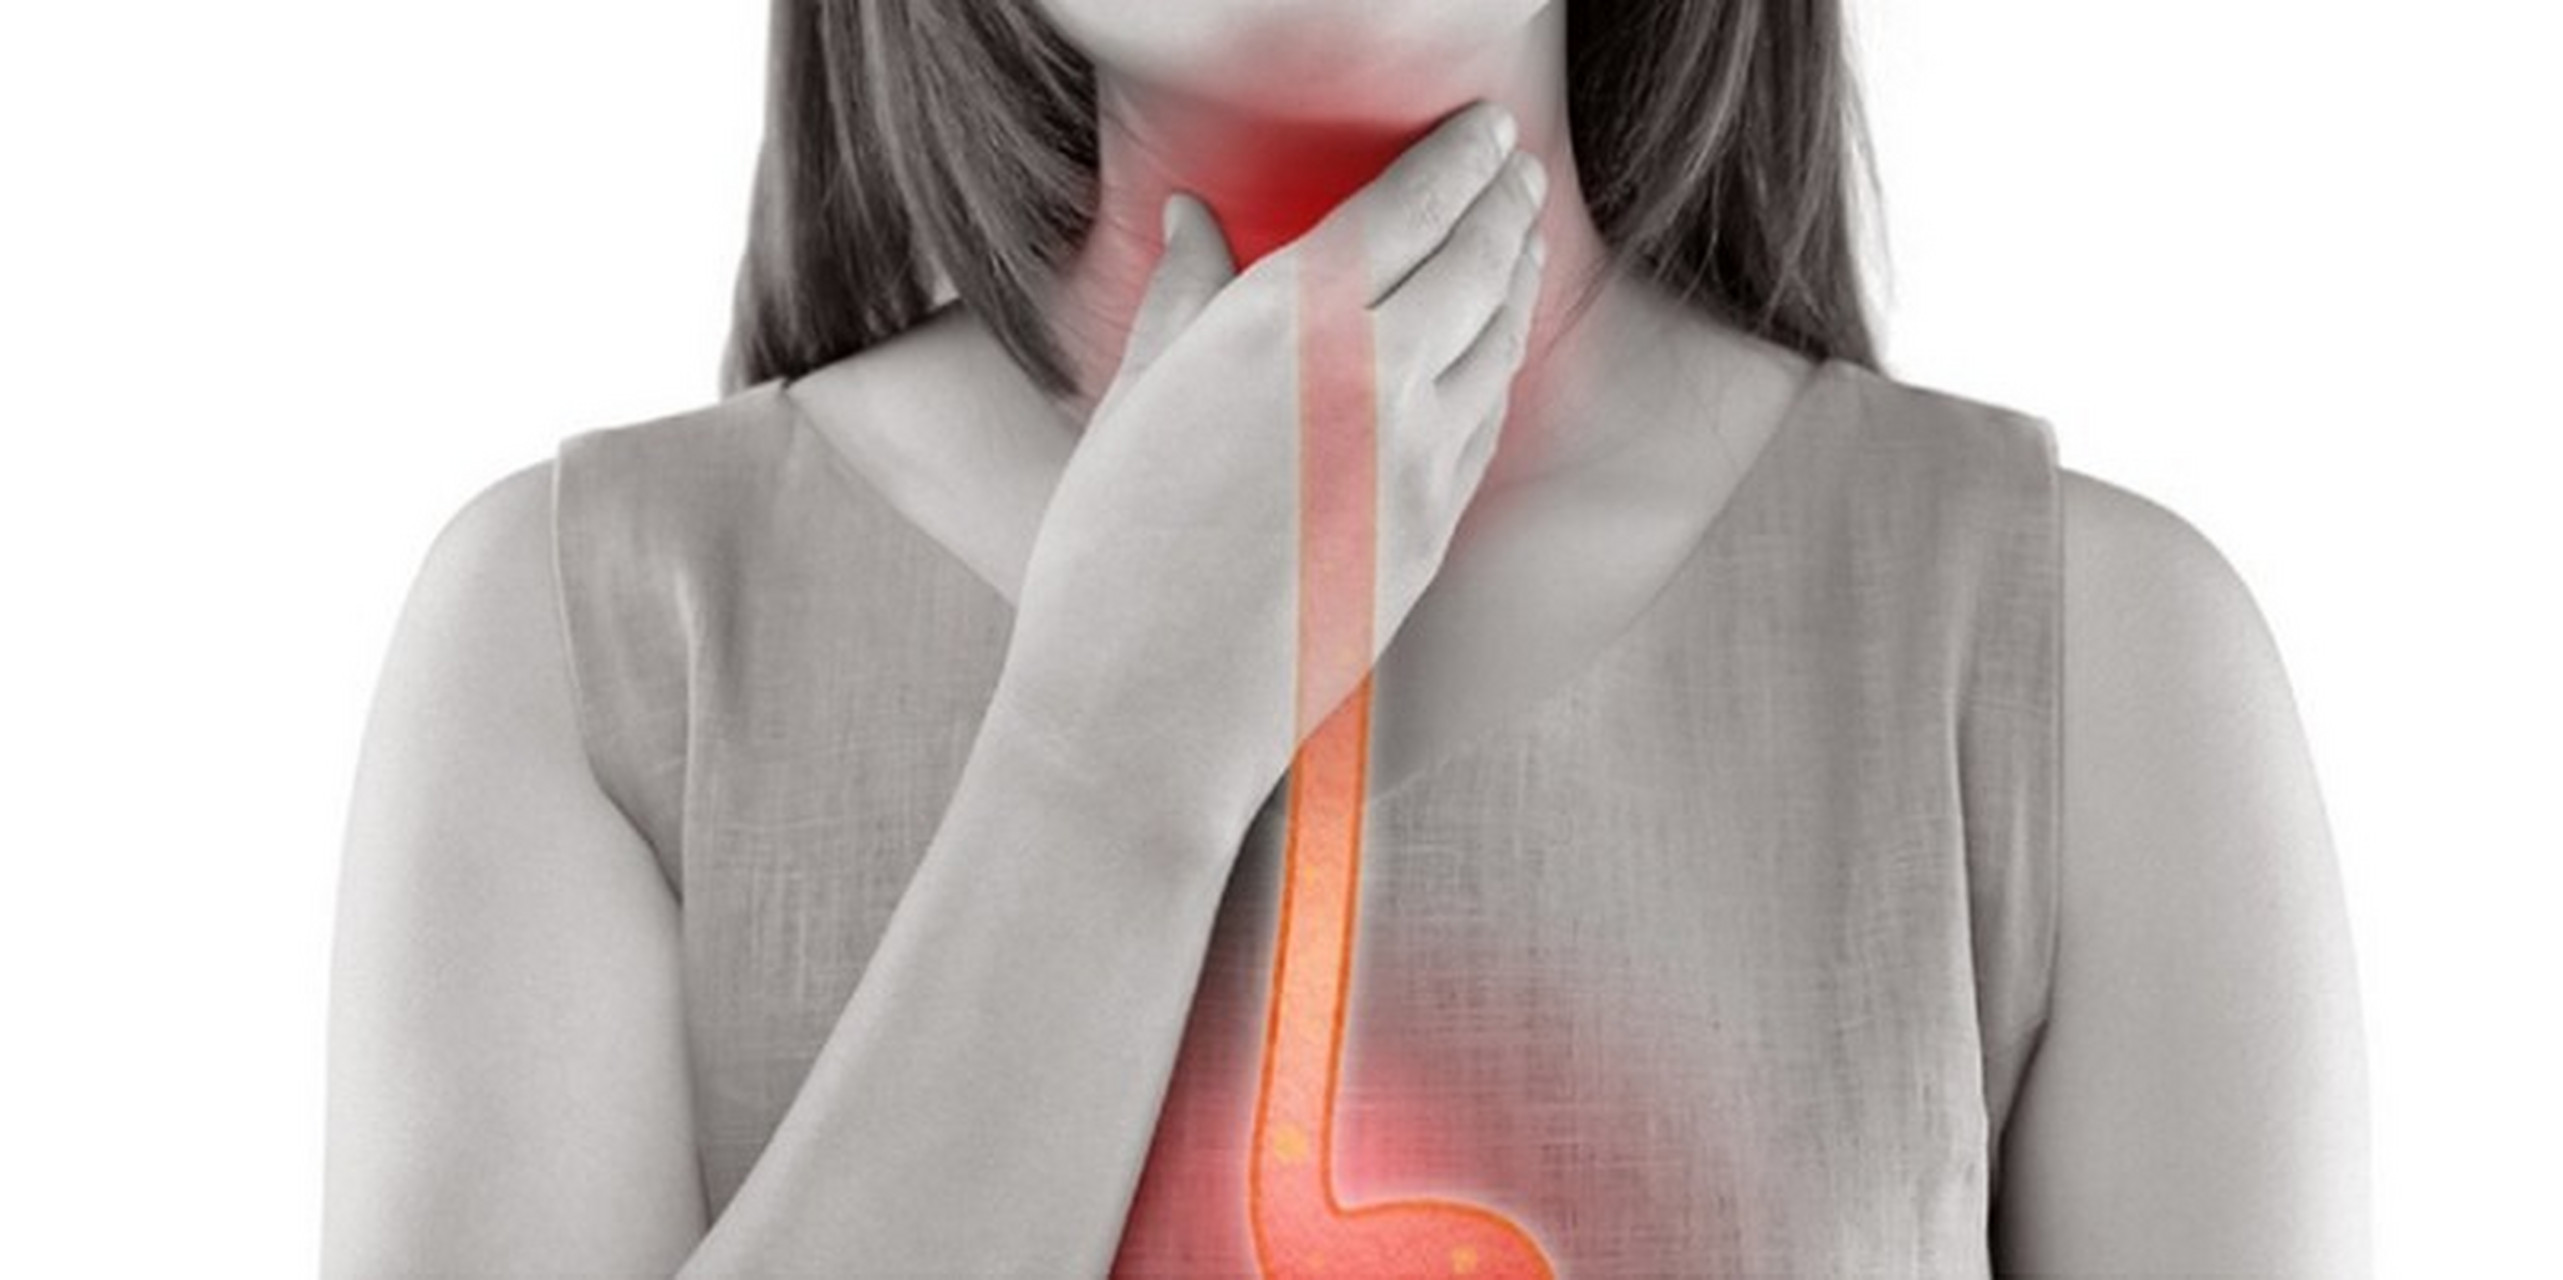 喉咙痛可能不是慢性咽炎,是胃反流73 早上睡醒经常觉得喉咙痛,痒痒